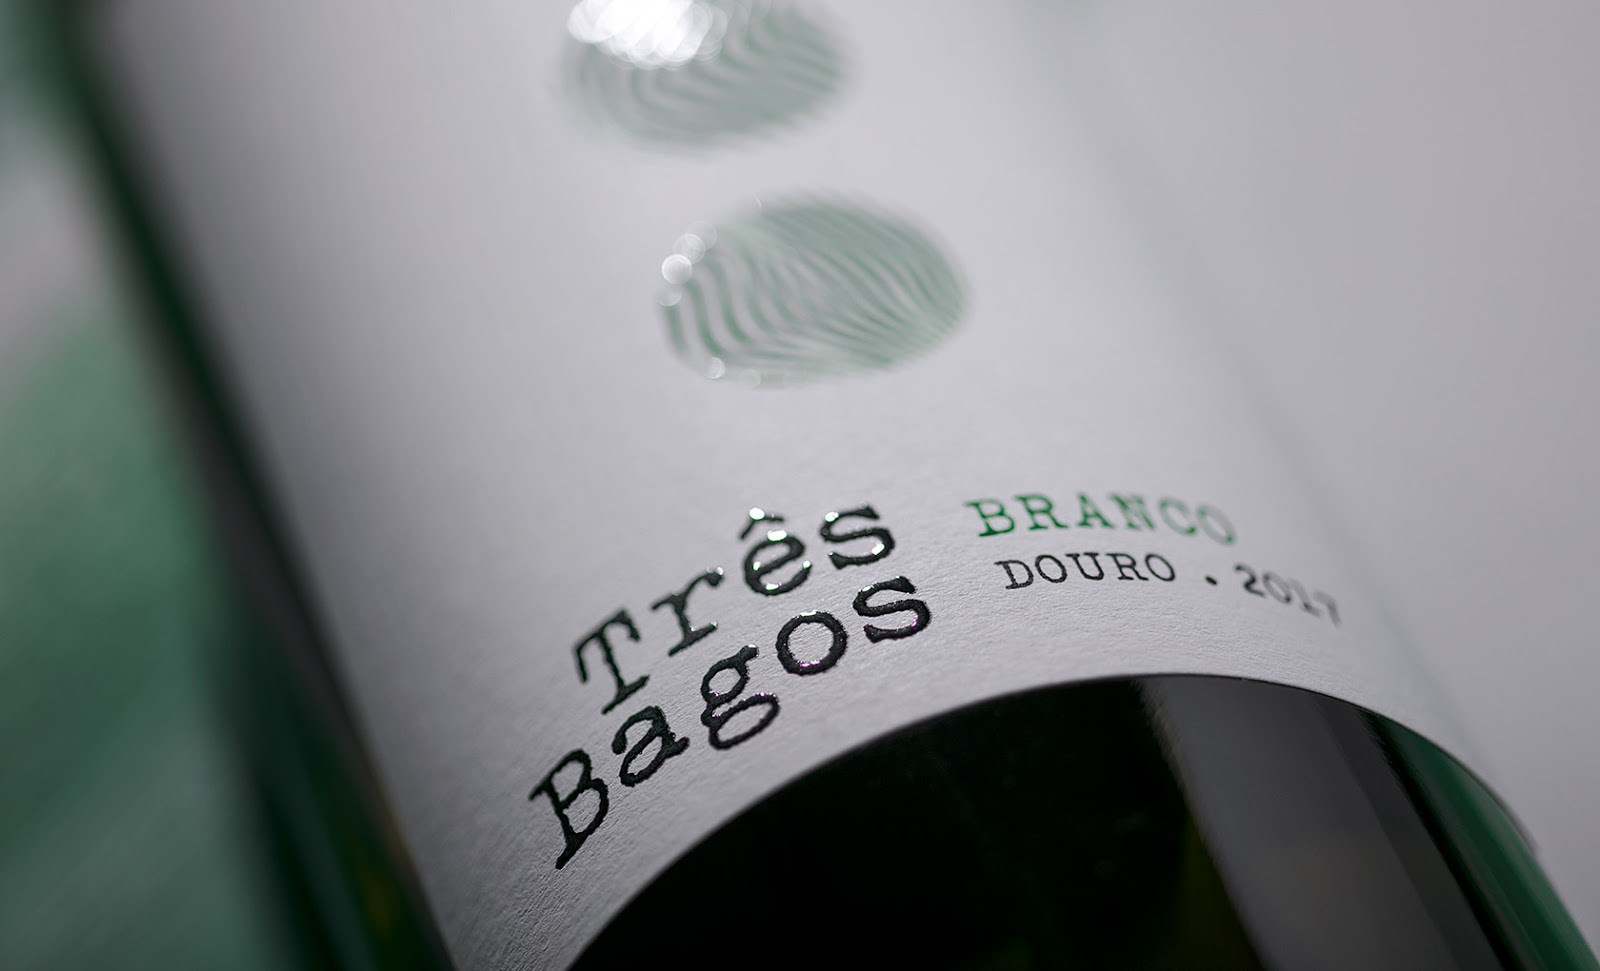 Três Bagos葡萄酒包装设计